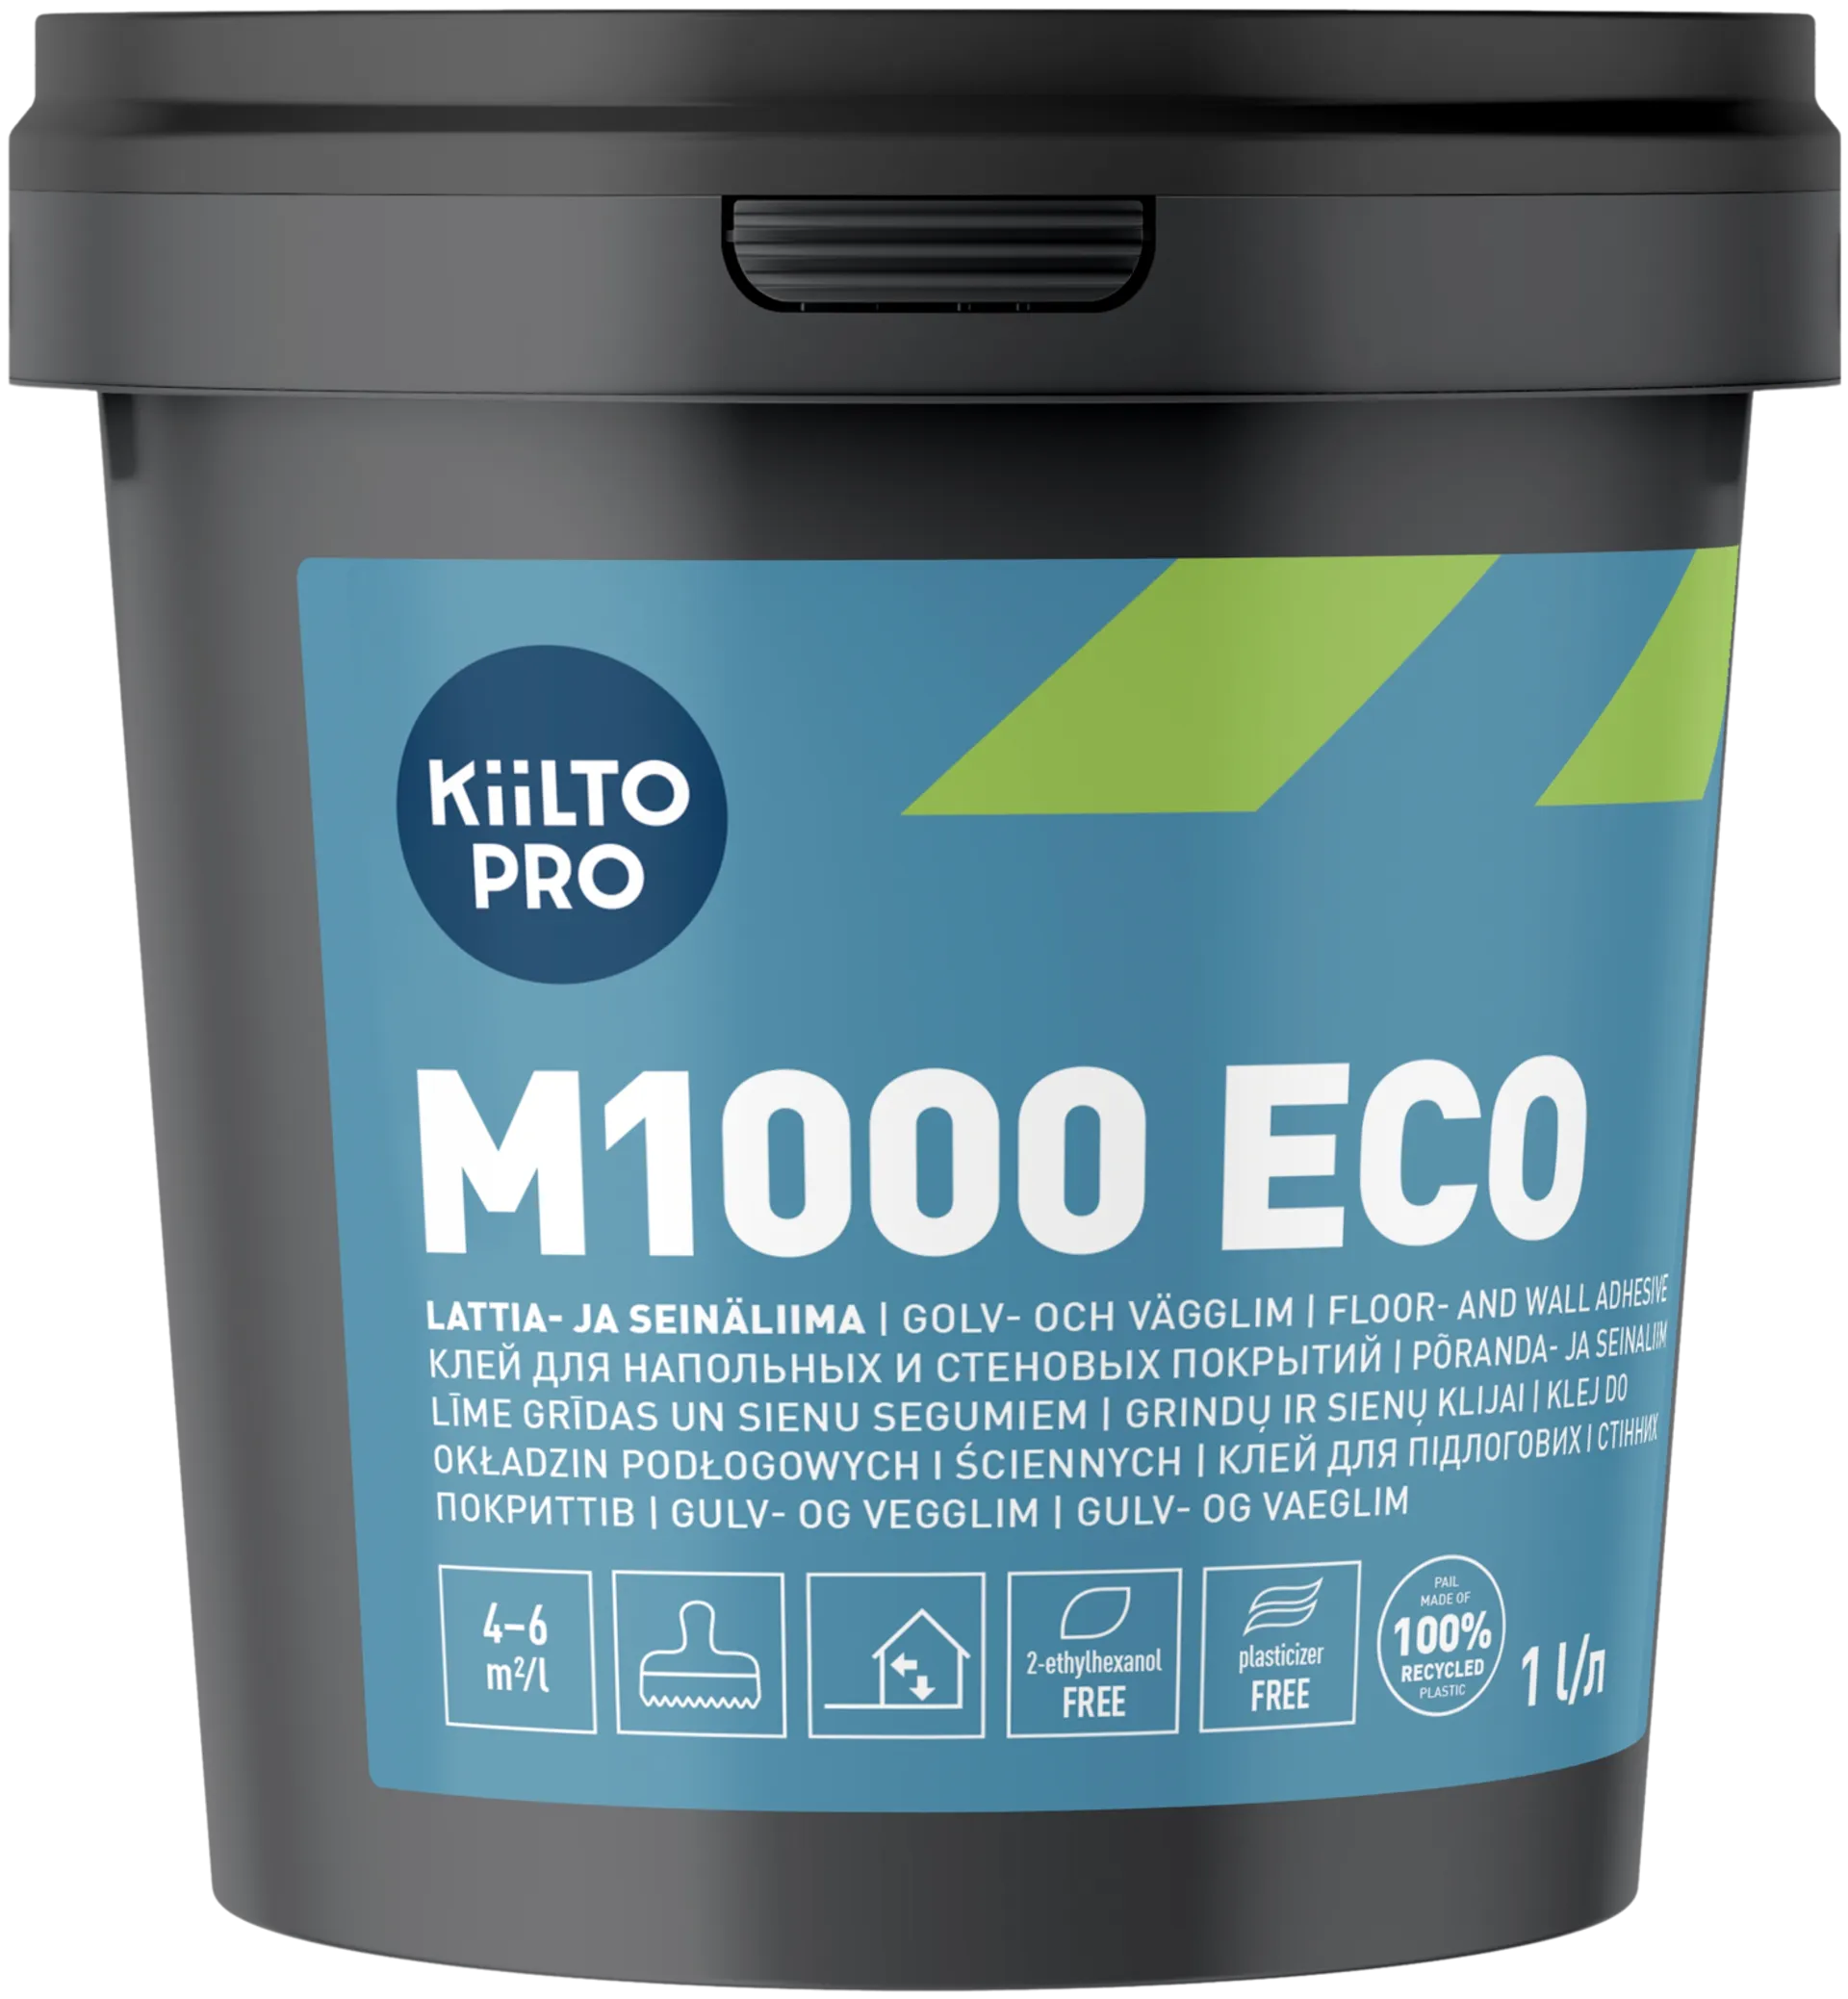 Kiilto Pro lattia- ja seinäliima M1000 Eco 1l